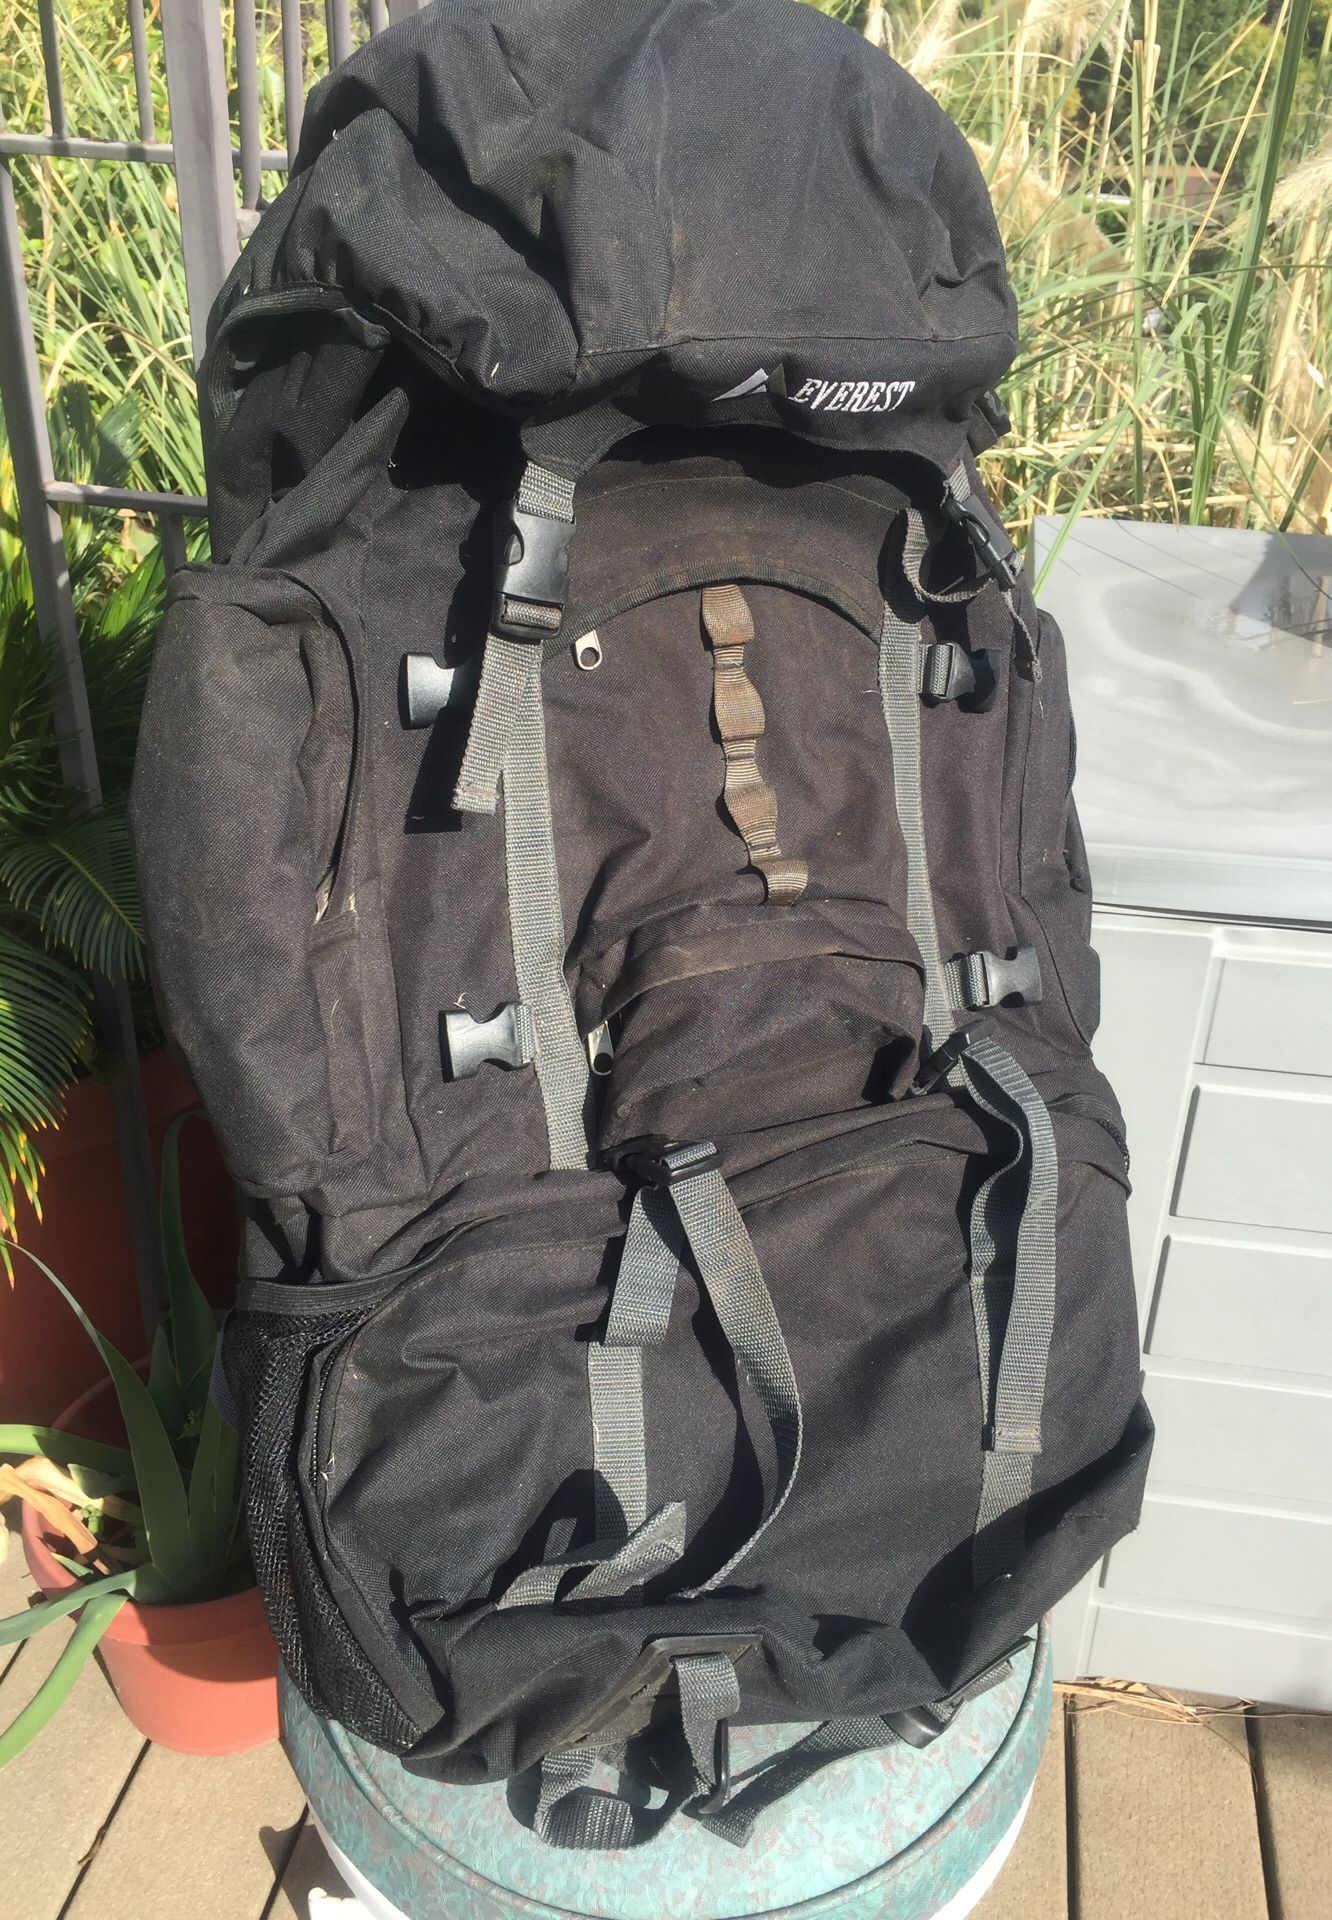 Everest Backpack Large Canvas Bag Hiking Pack w/ Metal Frame Black 8045DLX